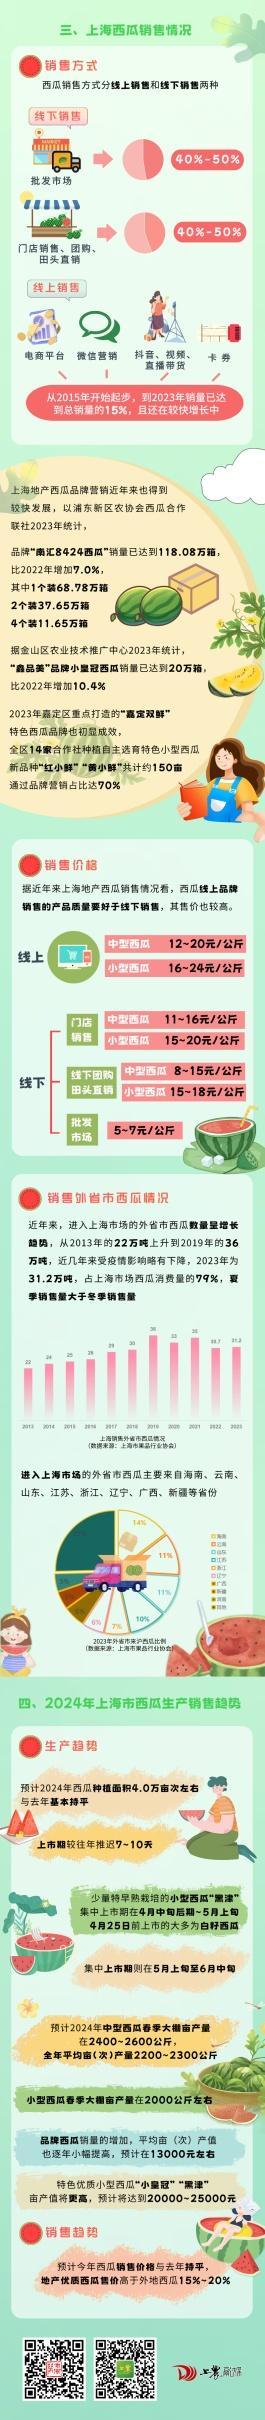 甜爽西瓜季要到了！来看今年上海的西瓜生产情况如何？